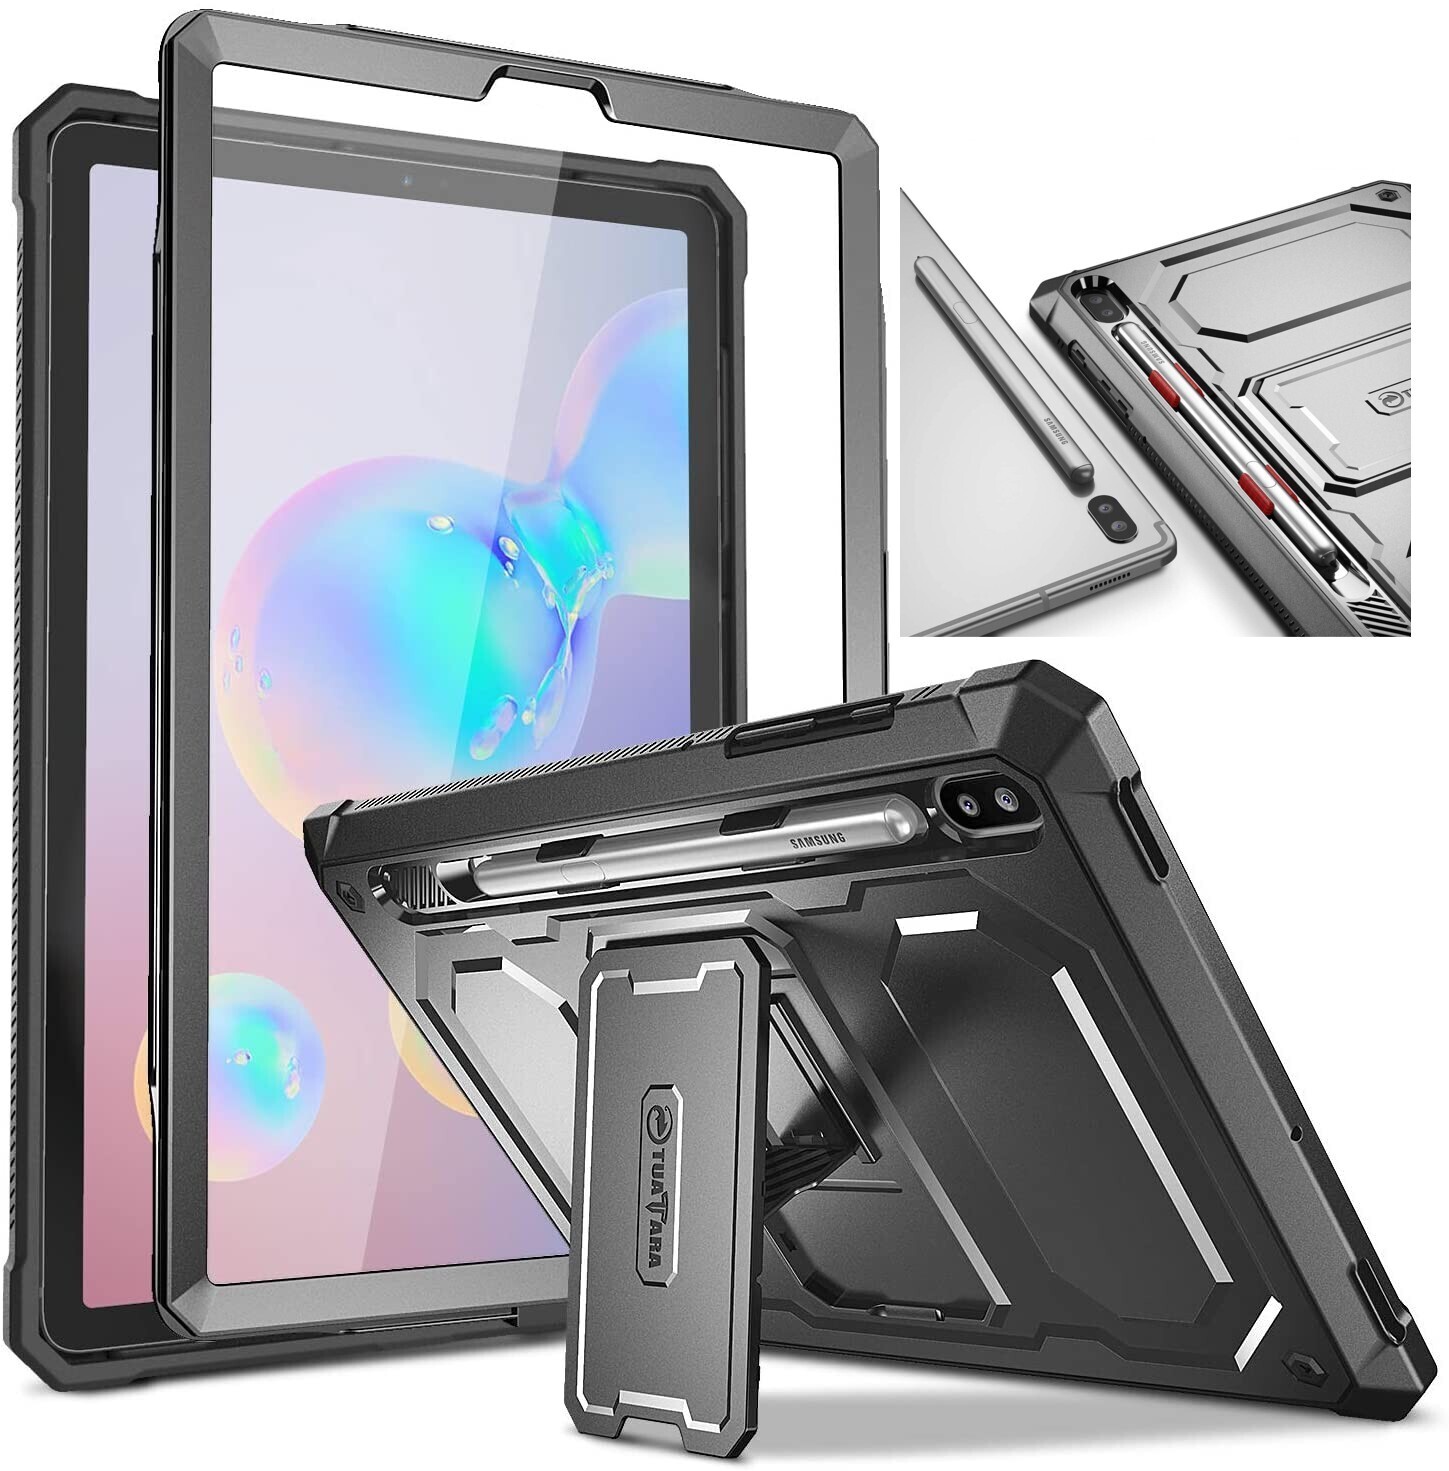 Case Galaxy Tab S6 T860 2019 Recias Armadura c/ Mica c/ Parador Armor USA